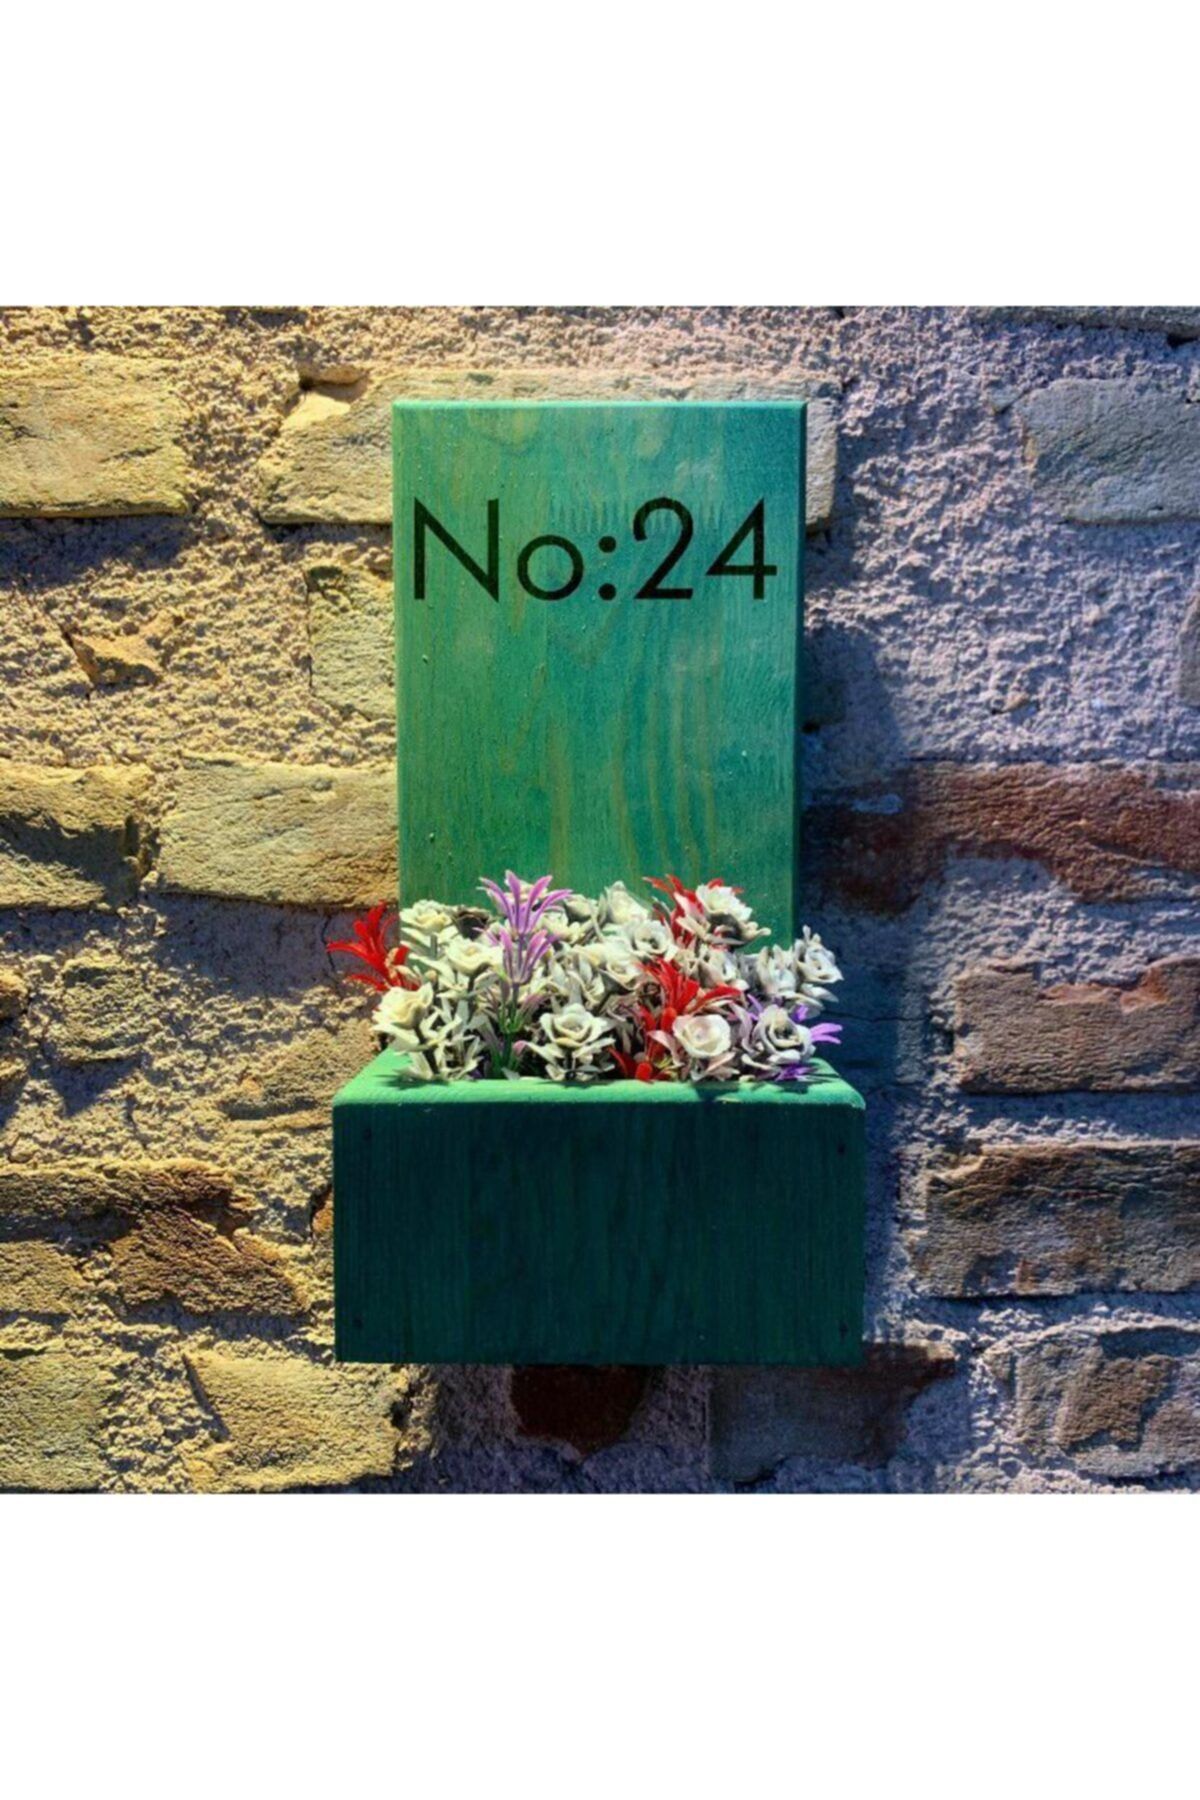 MSAĞWOODS No:24 Kapı Önü Ahşap Kapı Numaralığı-çiçeklik-duvar Süsü-doğal-otantik-ev Hediyesi-kapı Isimliği